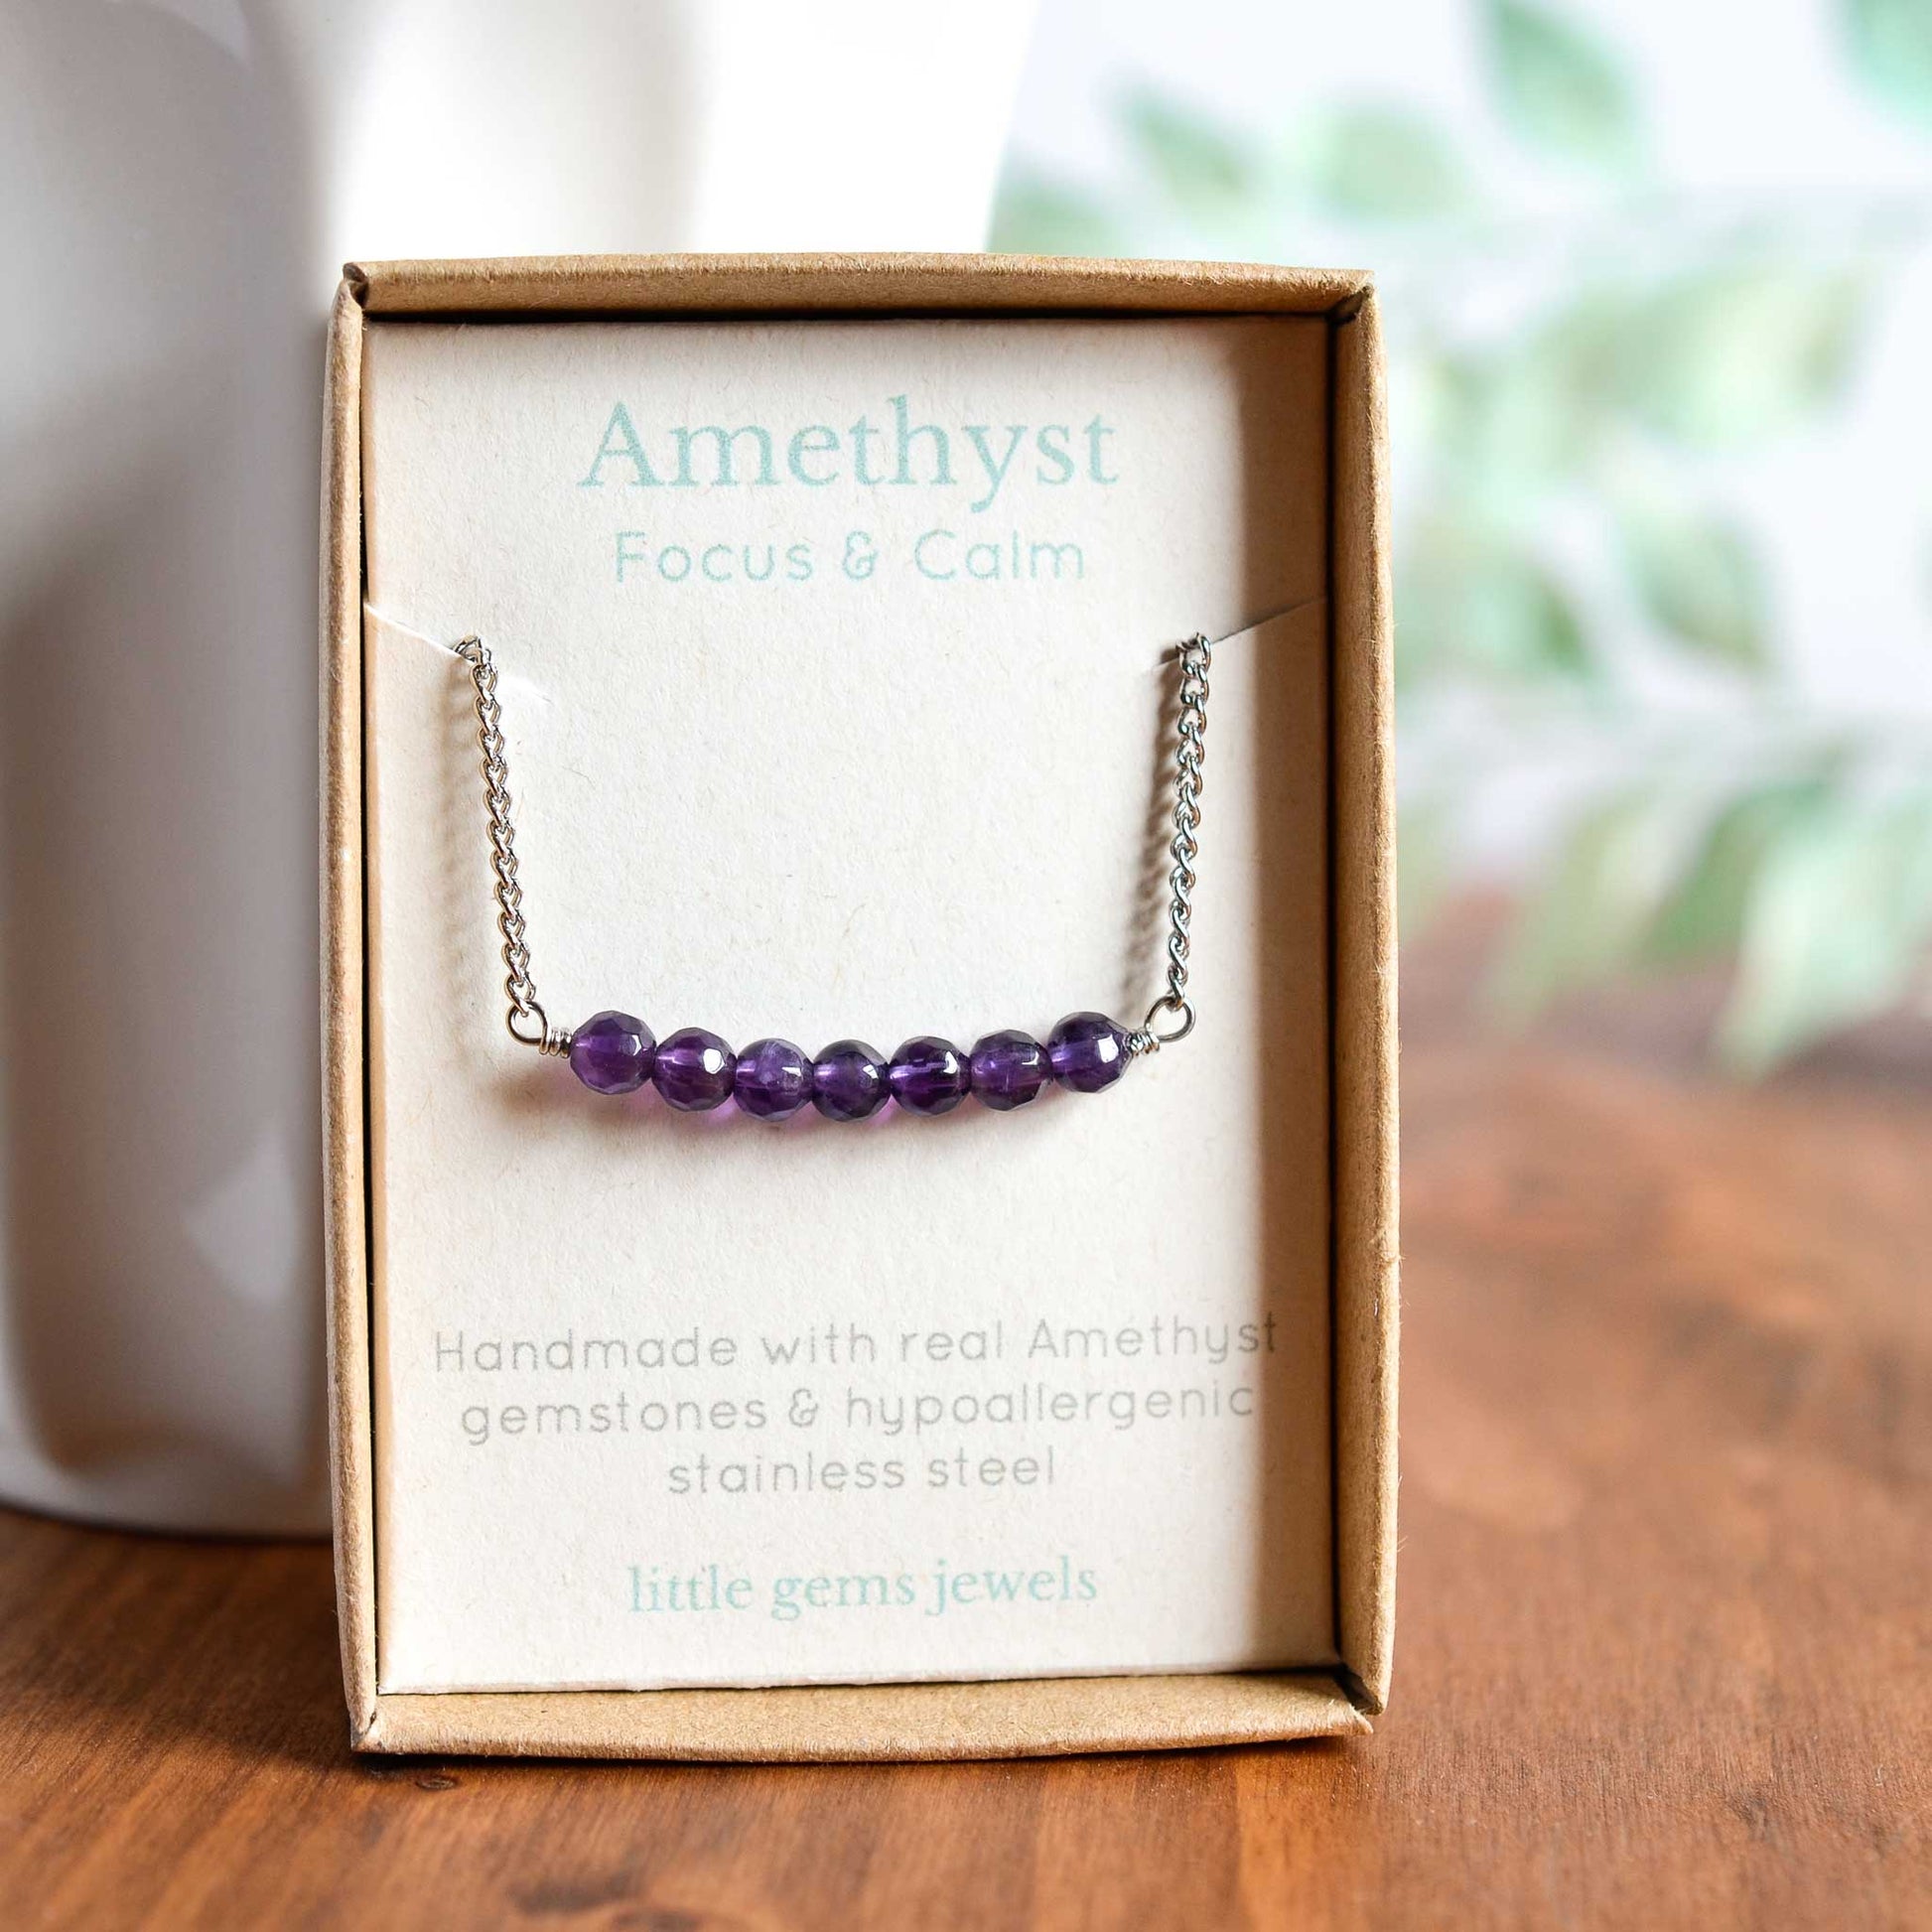 Amethyst gemstone bar necklace in gift box